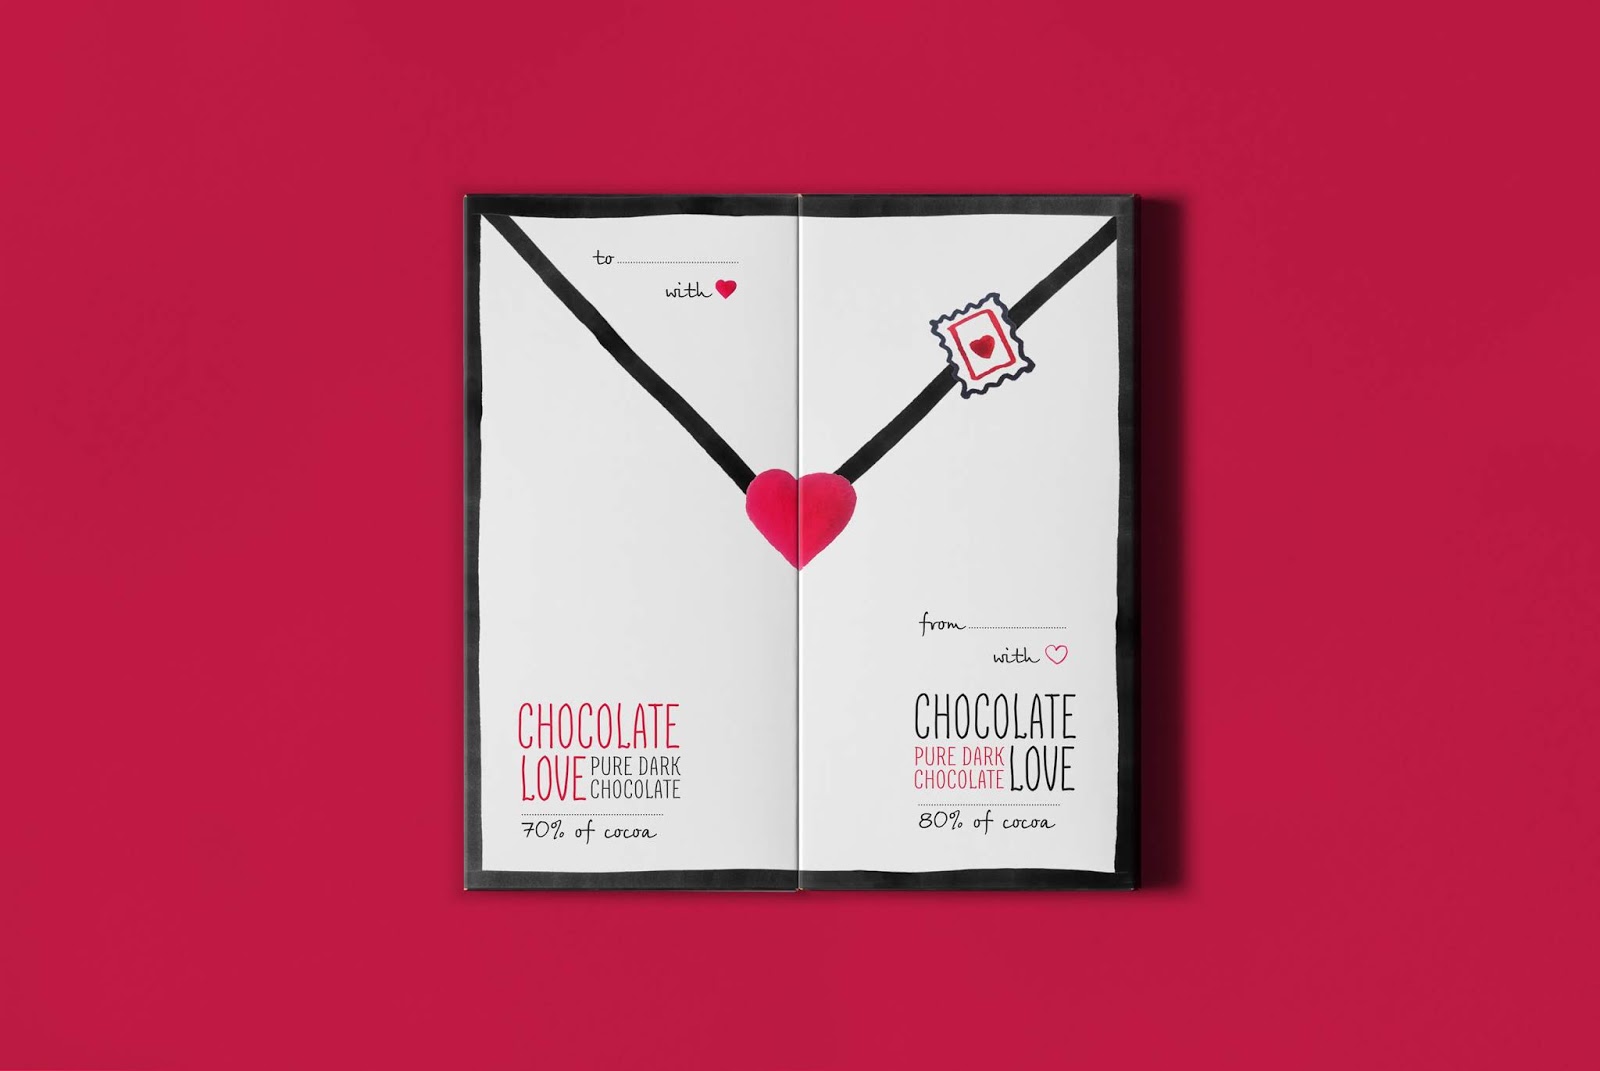 爱与巧克力西安oe欧亿体育app官方下载
品牌包装设计